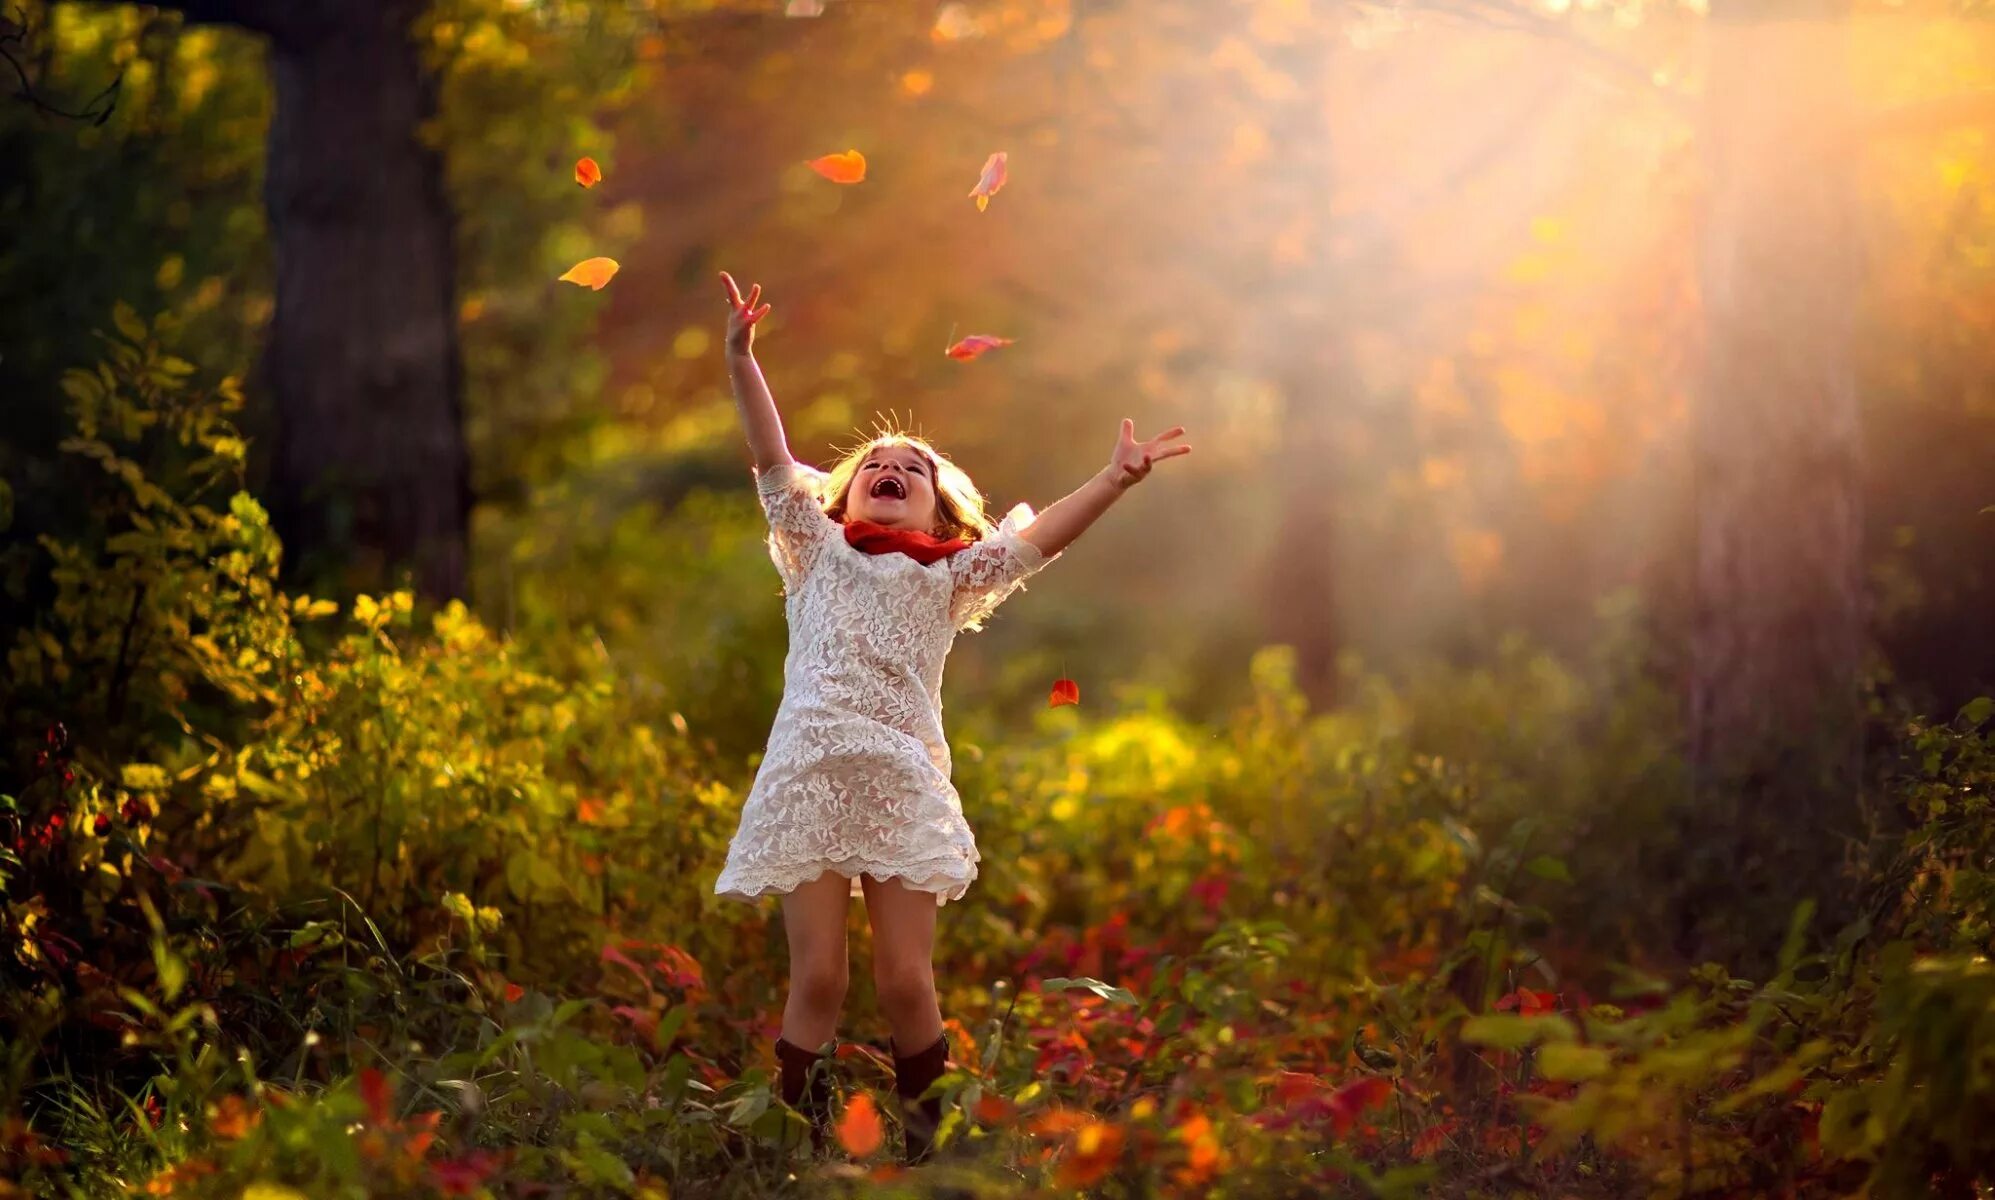 Есть на свете такие счастливые лица глядеть. Осень радость. Дети радуются. Солнце радость. Дети и природа.